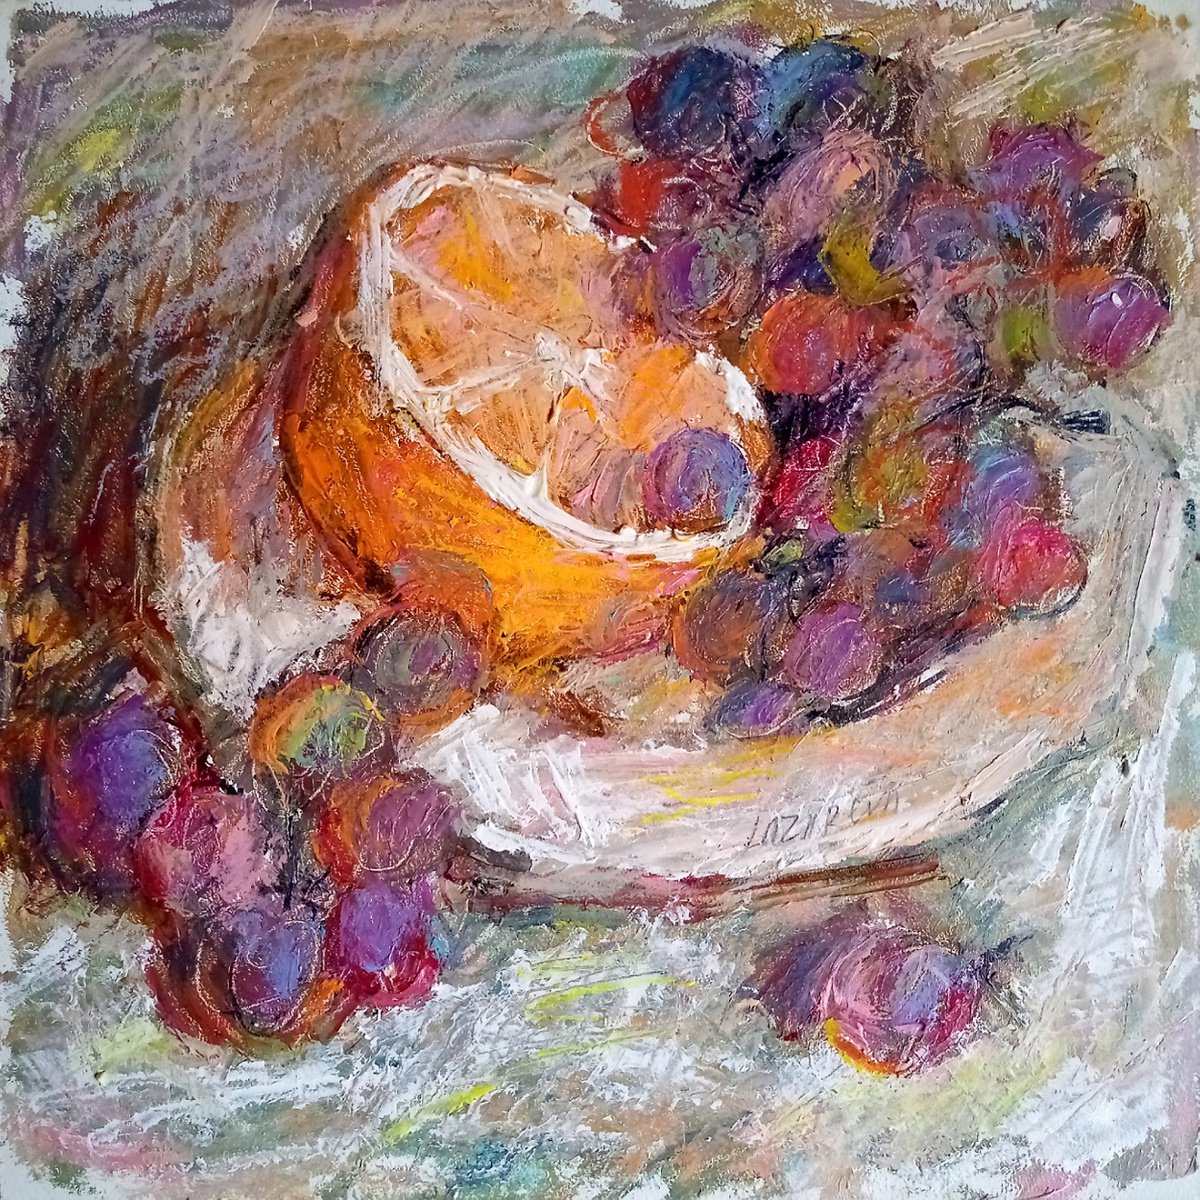 Grapes & orange #1 by Valerie Lazareva